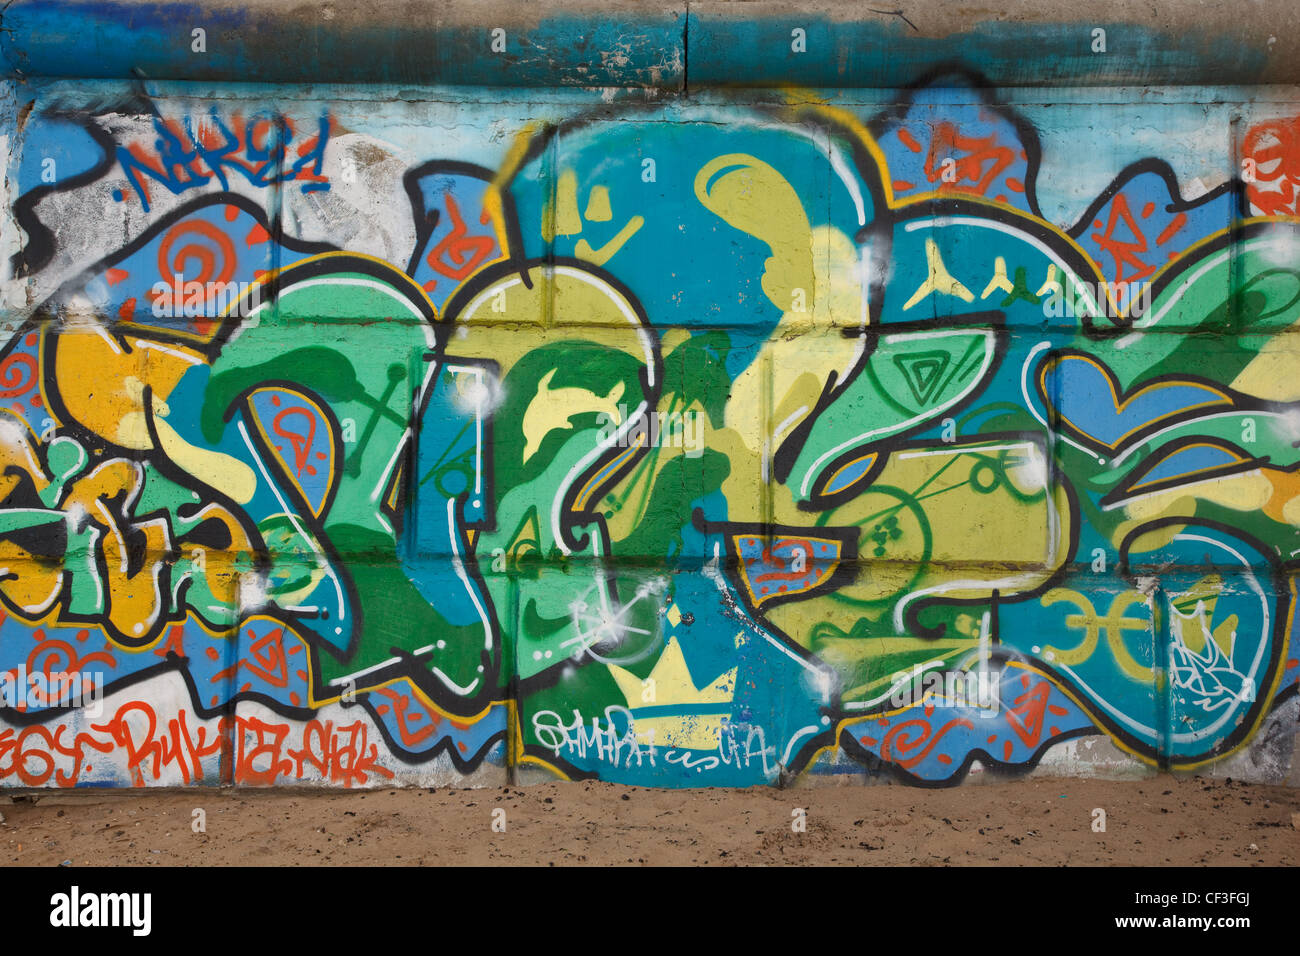 Graffiti auf Betonwand. Persönlichen Ausdrucks ist die neue Generation. Stockfoto